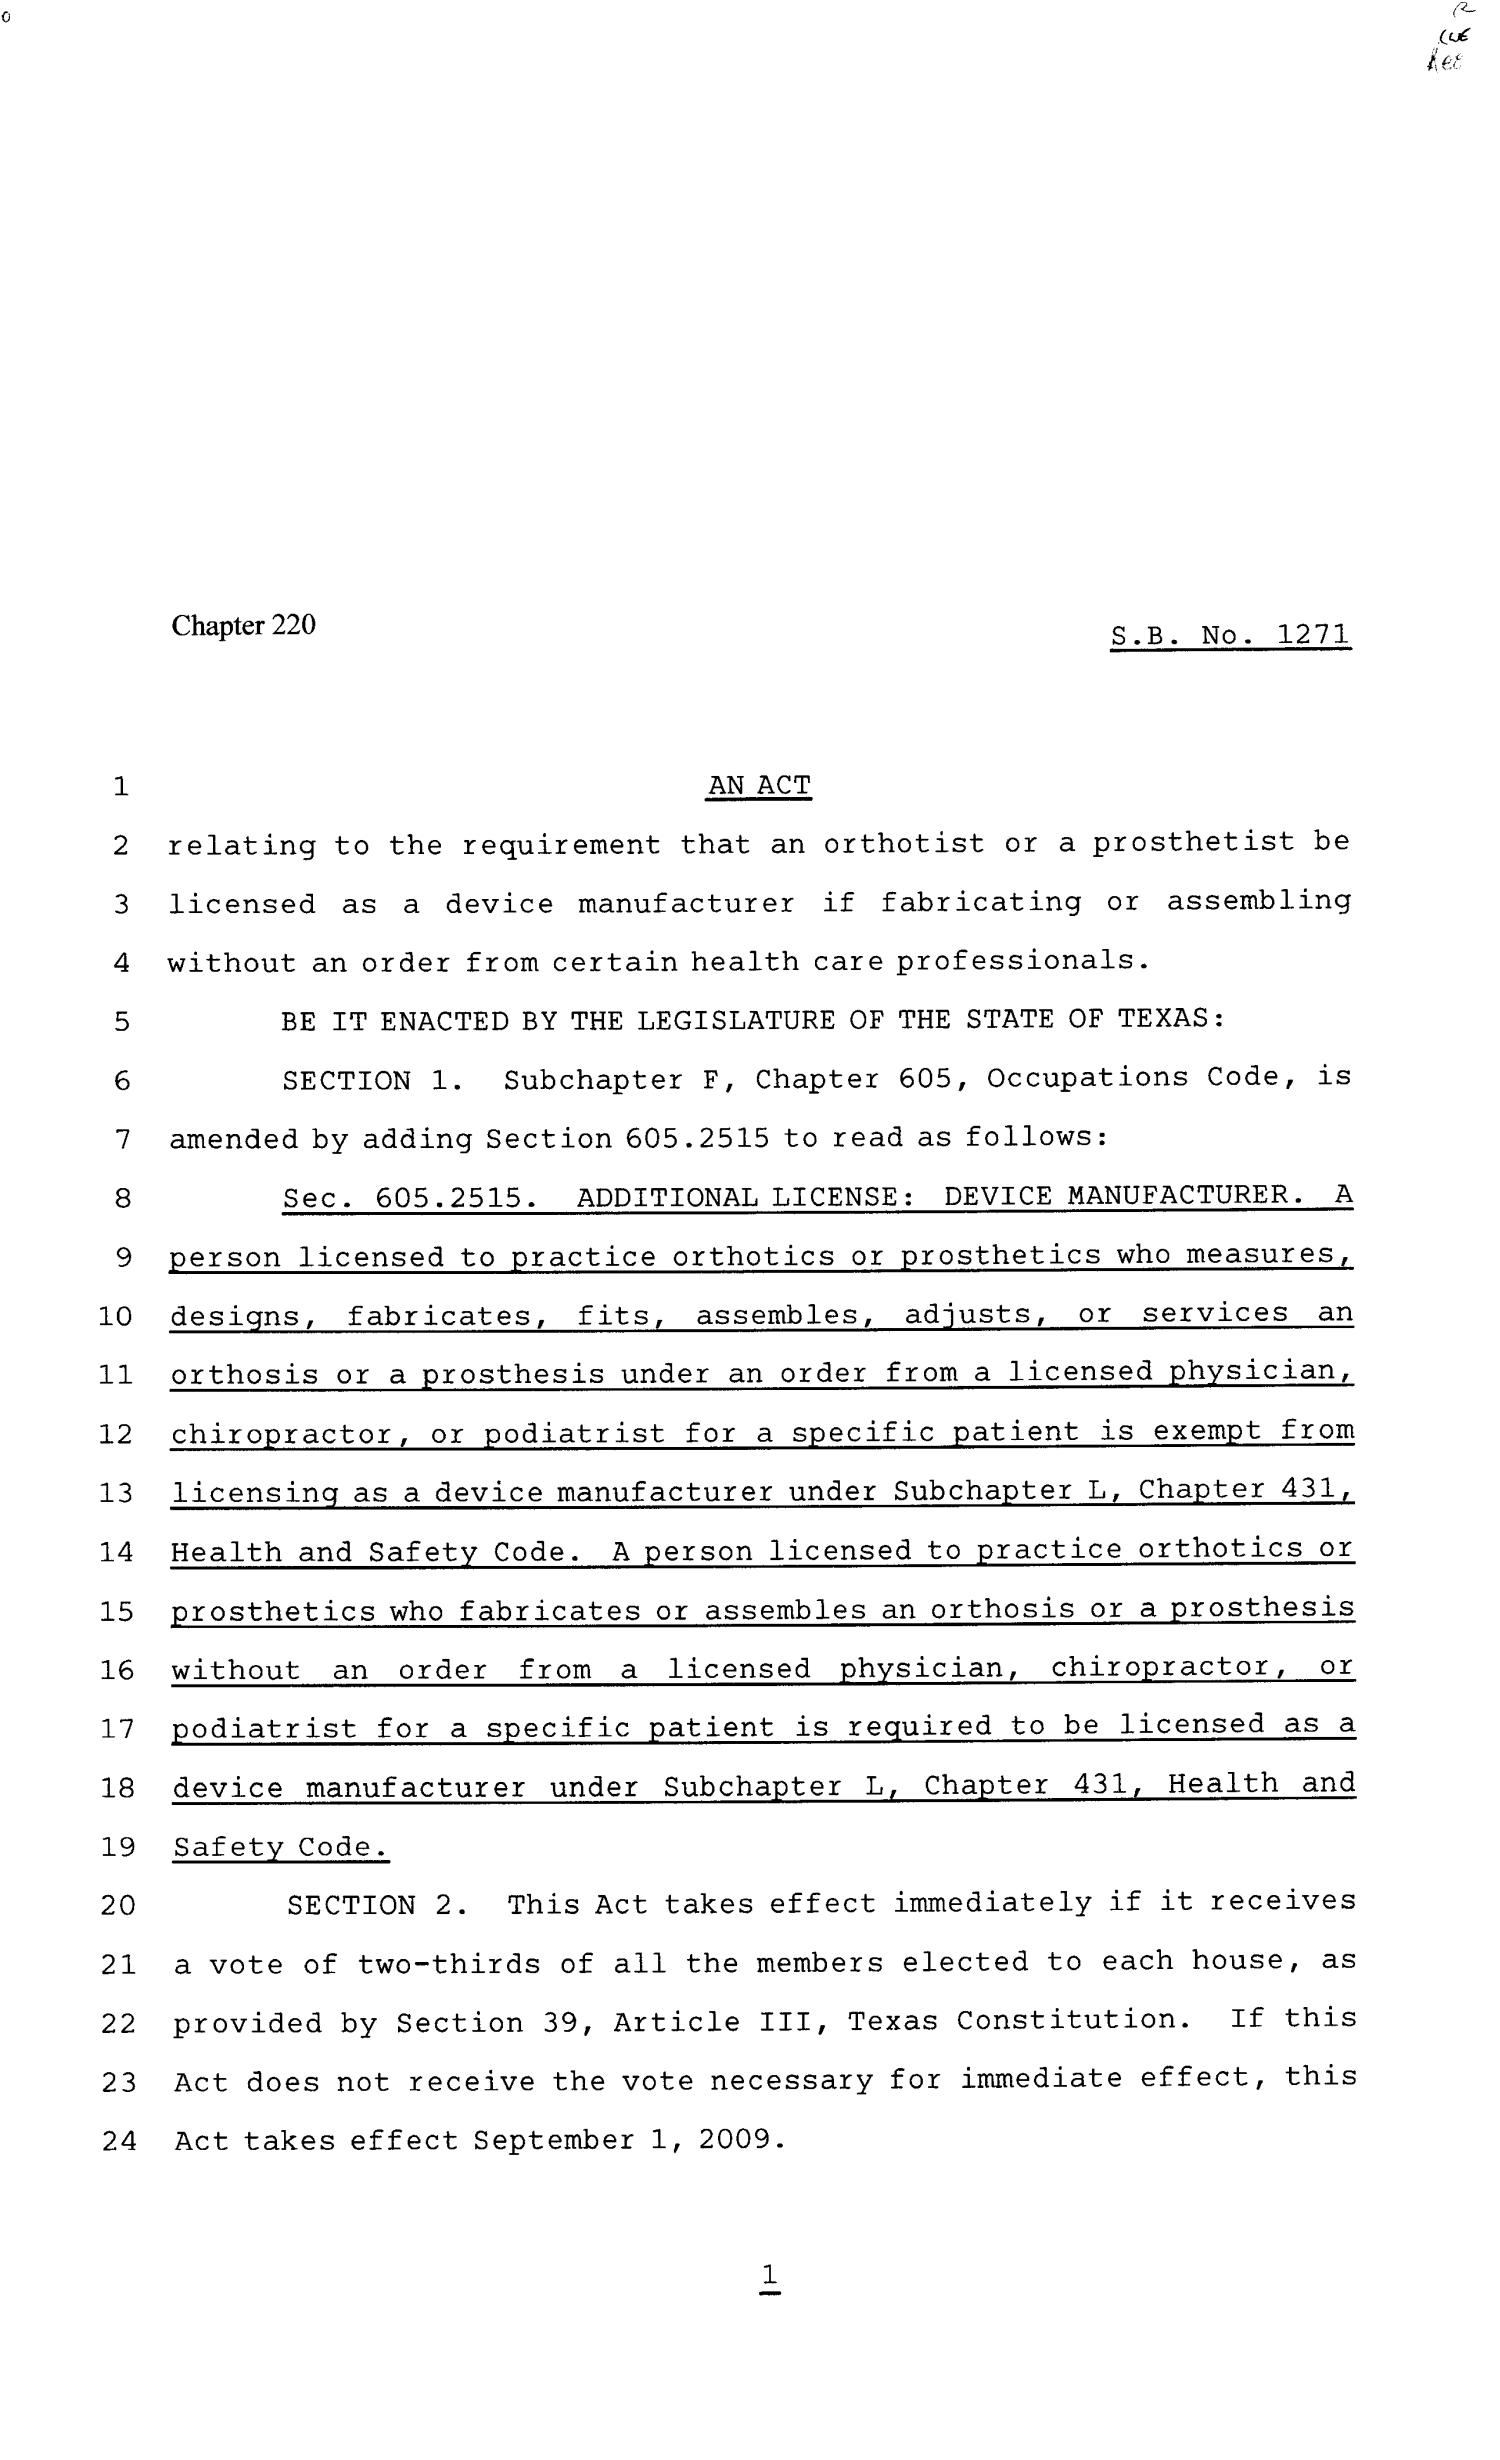 81st Texas Legislature, Senate Bill 1271, Chapter 220
                                                
                                                    [Sequence #]: 1 of 2
                                                